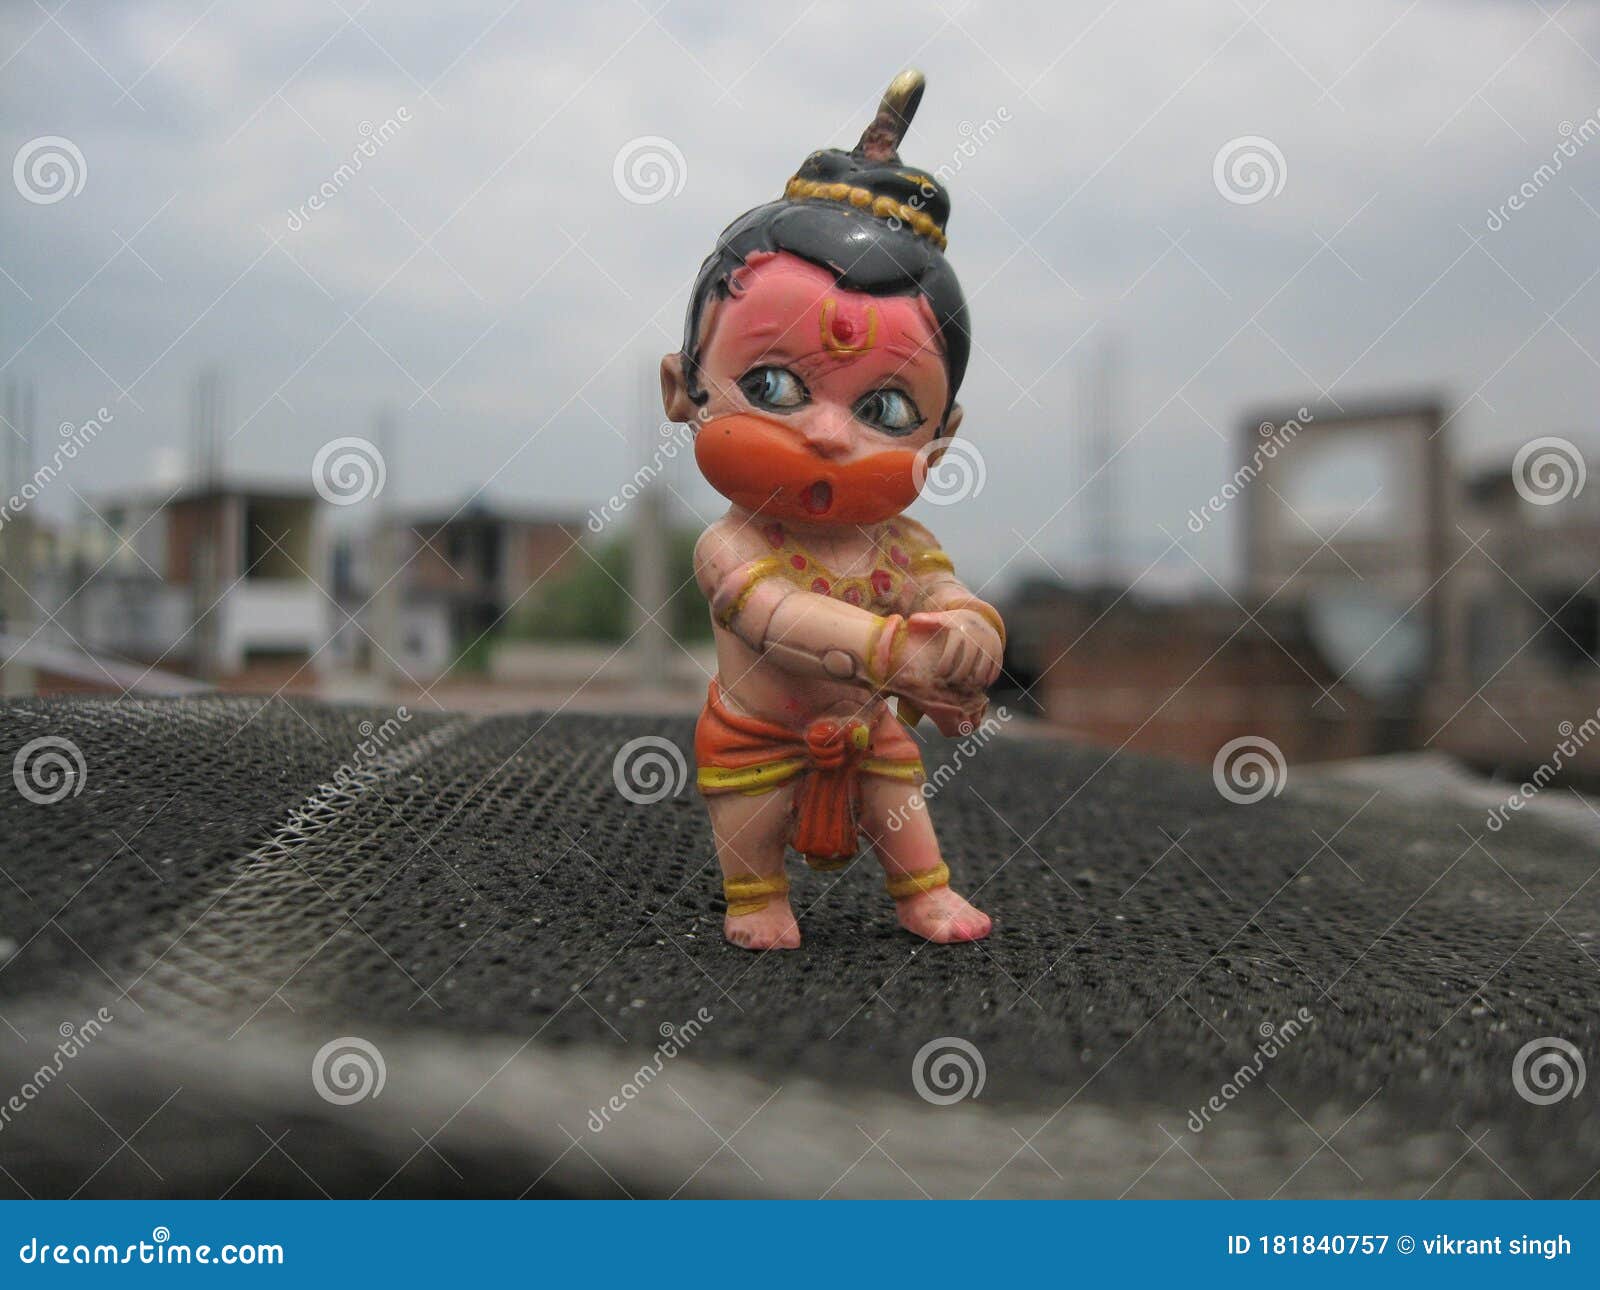 612+ Lord Hanuman Images & Bhagwan bajrangbali Ji Ki Photos